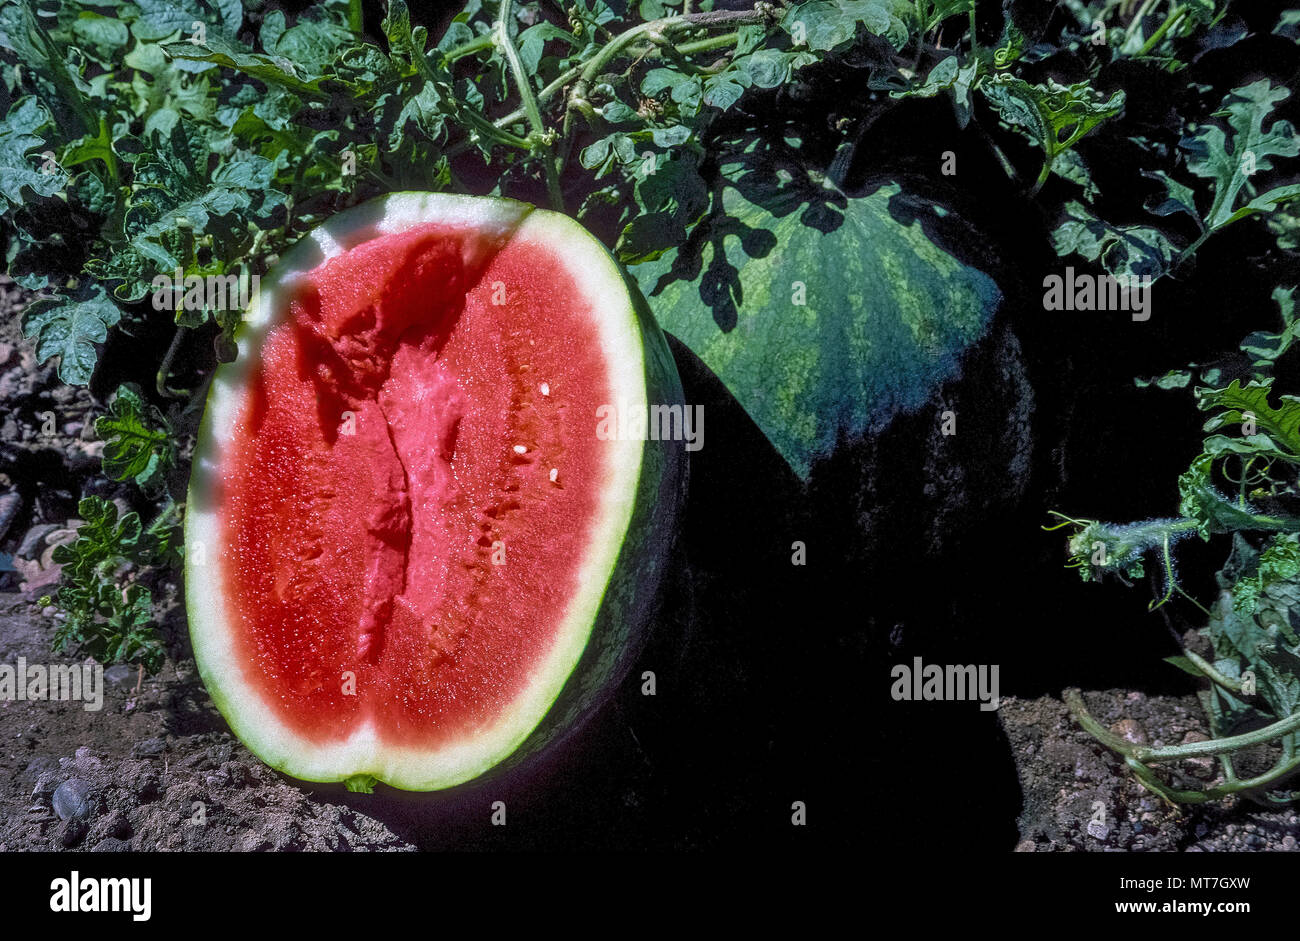 Eine kernlose Wassermelone (Citrullus lanatus) hat in der Hälfte in  Kalifornien, USA, Bauernhof Feld geschnitten worden die Reife der grosse  saftige Frucht, die mehr als 90 Prozent Wasser zu prüfen. Diese populären